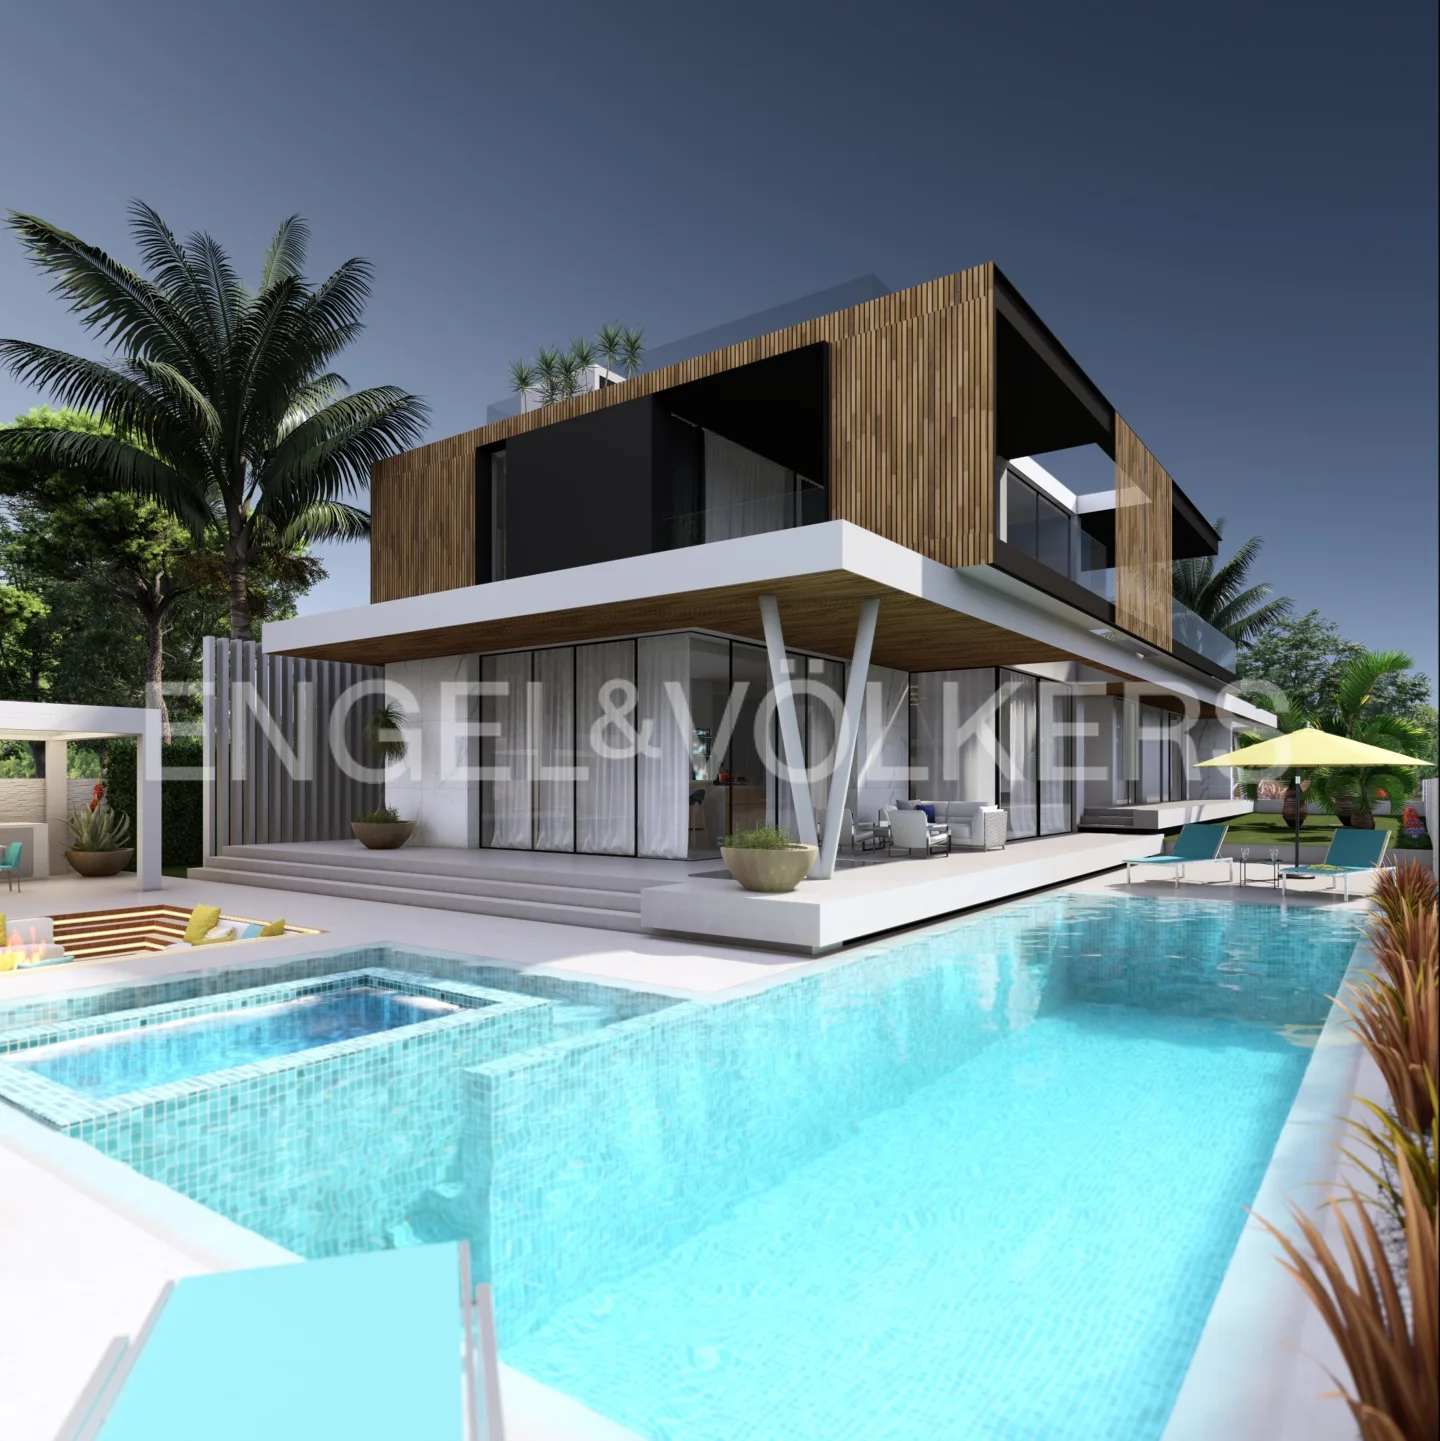 Exclusive luxury villa near Salgados - under construction